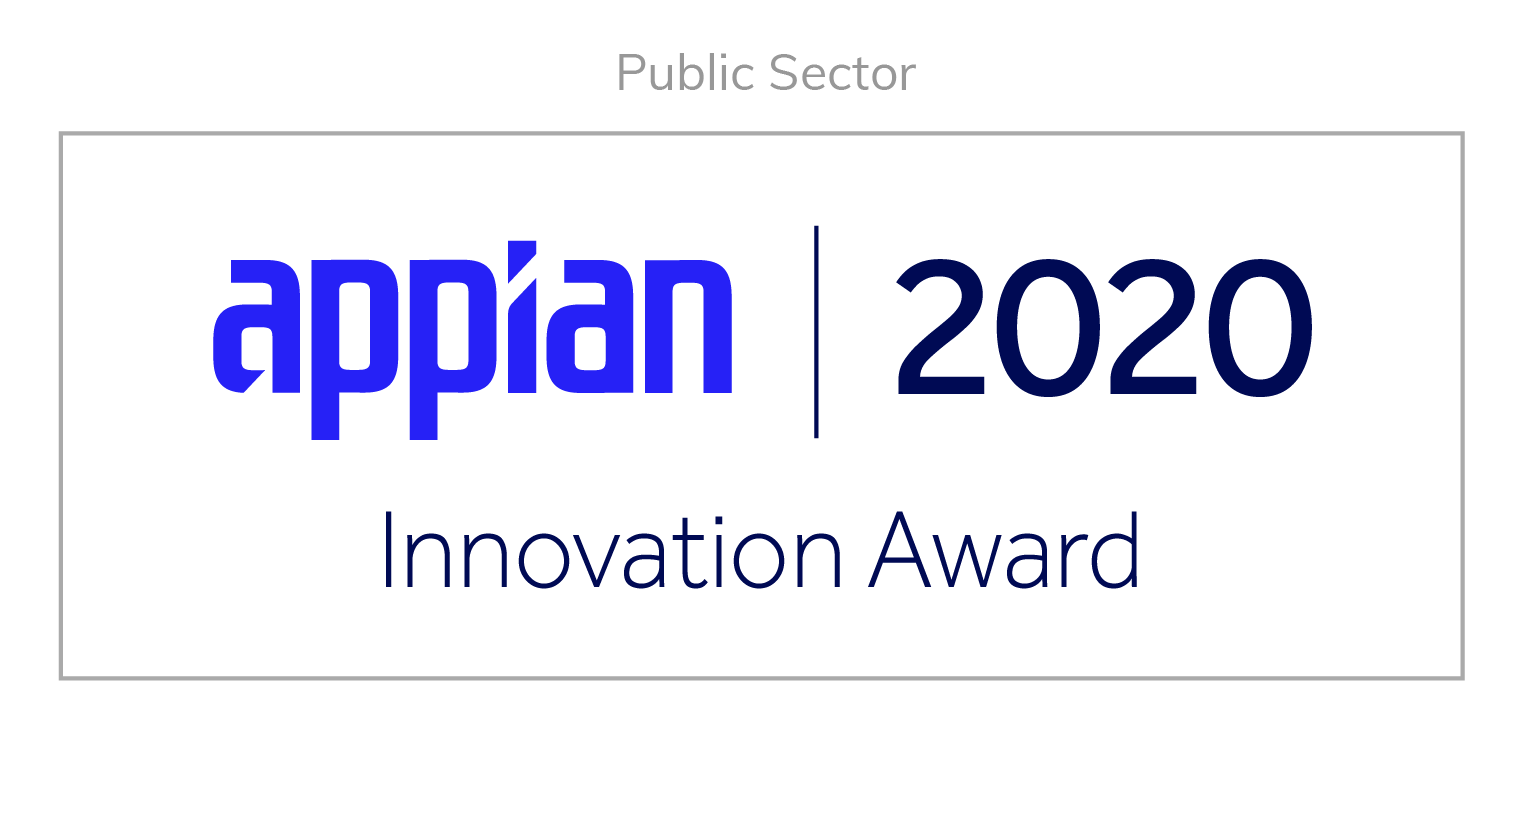 Innovation Award 2020 - Public Sector